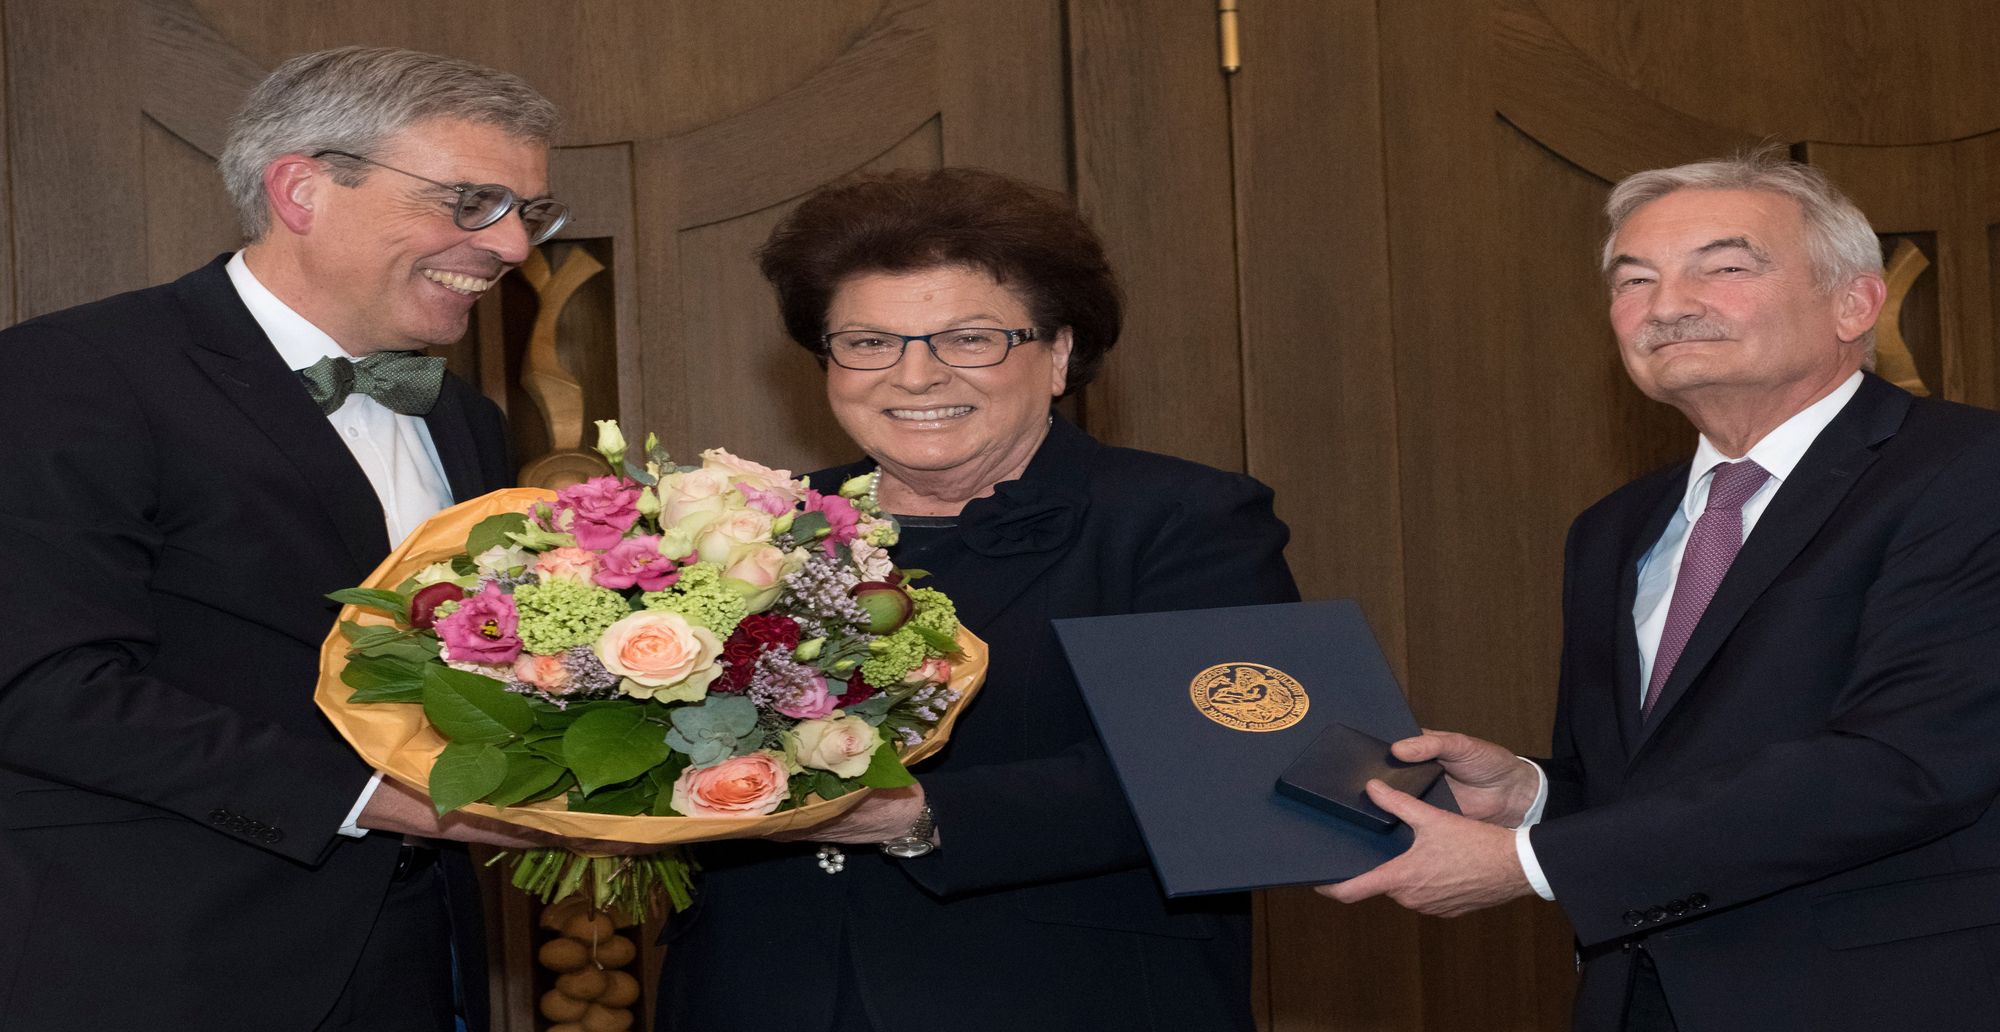 Landtagspräsidentin a. D. Barbara Stamm wurde für ihre herausragenden Verdienste um die Würzburger Universitätsmedizin mit der Carl Caspar von Siebold-Medaille geehrt.  